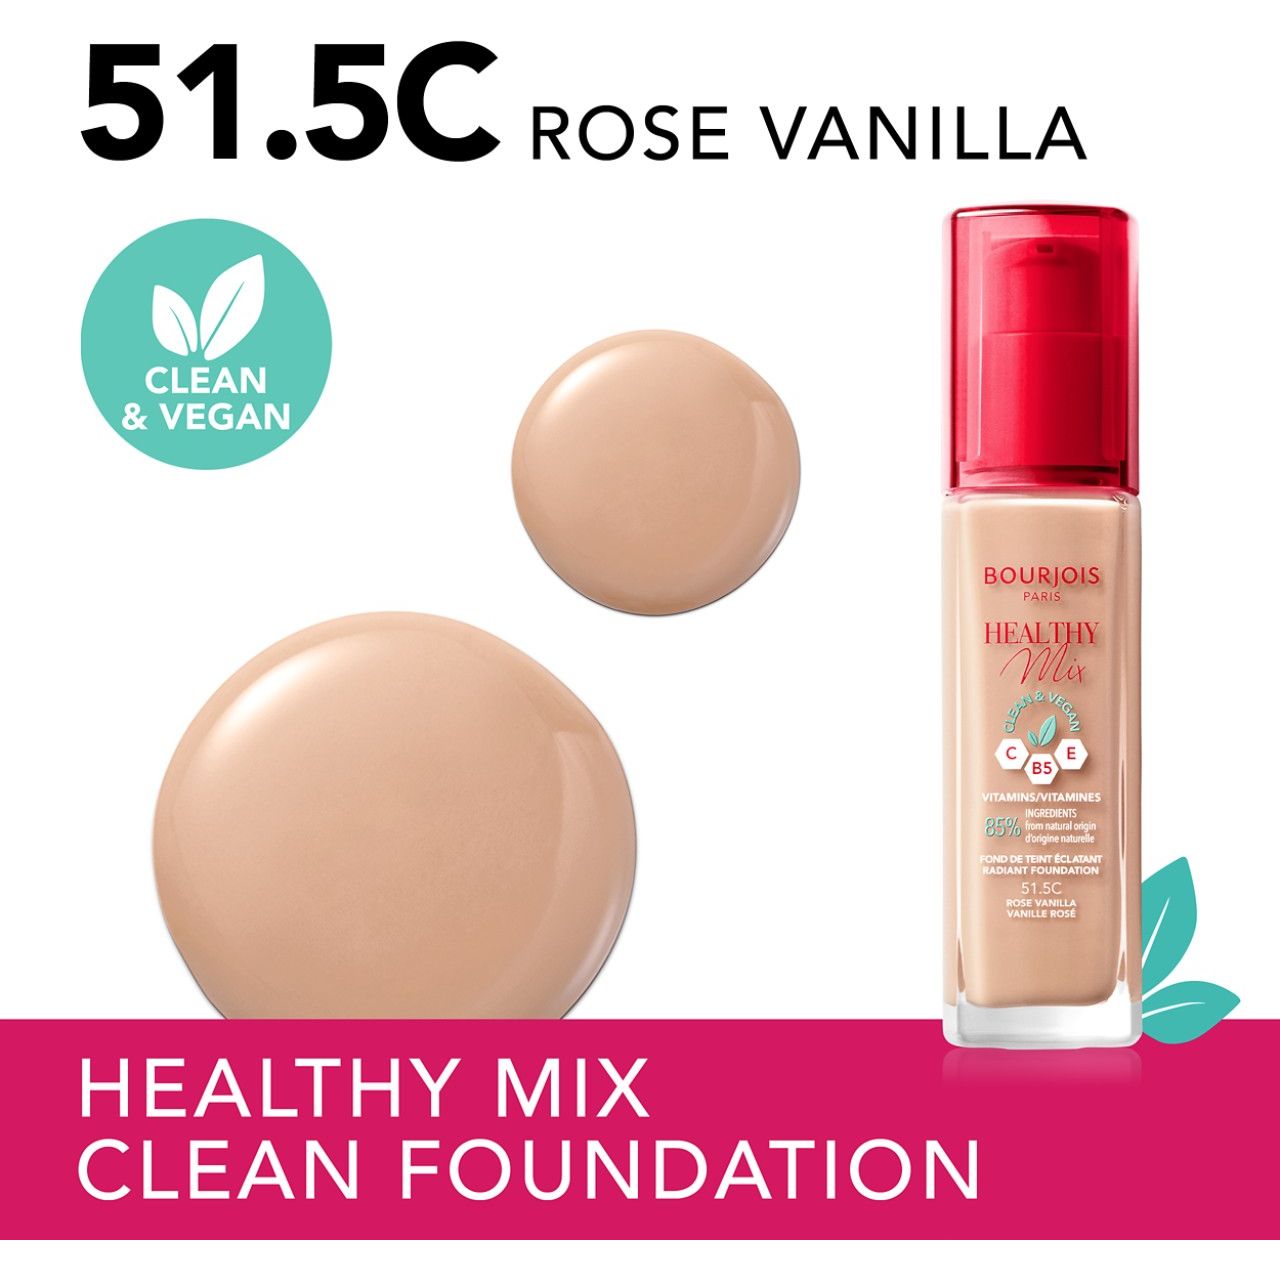 Тональная основа Bourjois Healthy Mix Clean & Vegan тон 51.5C (Rose Vanilla) 30 мл - фото 3